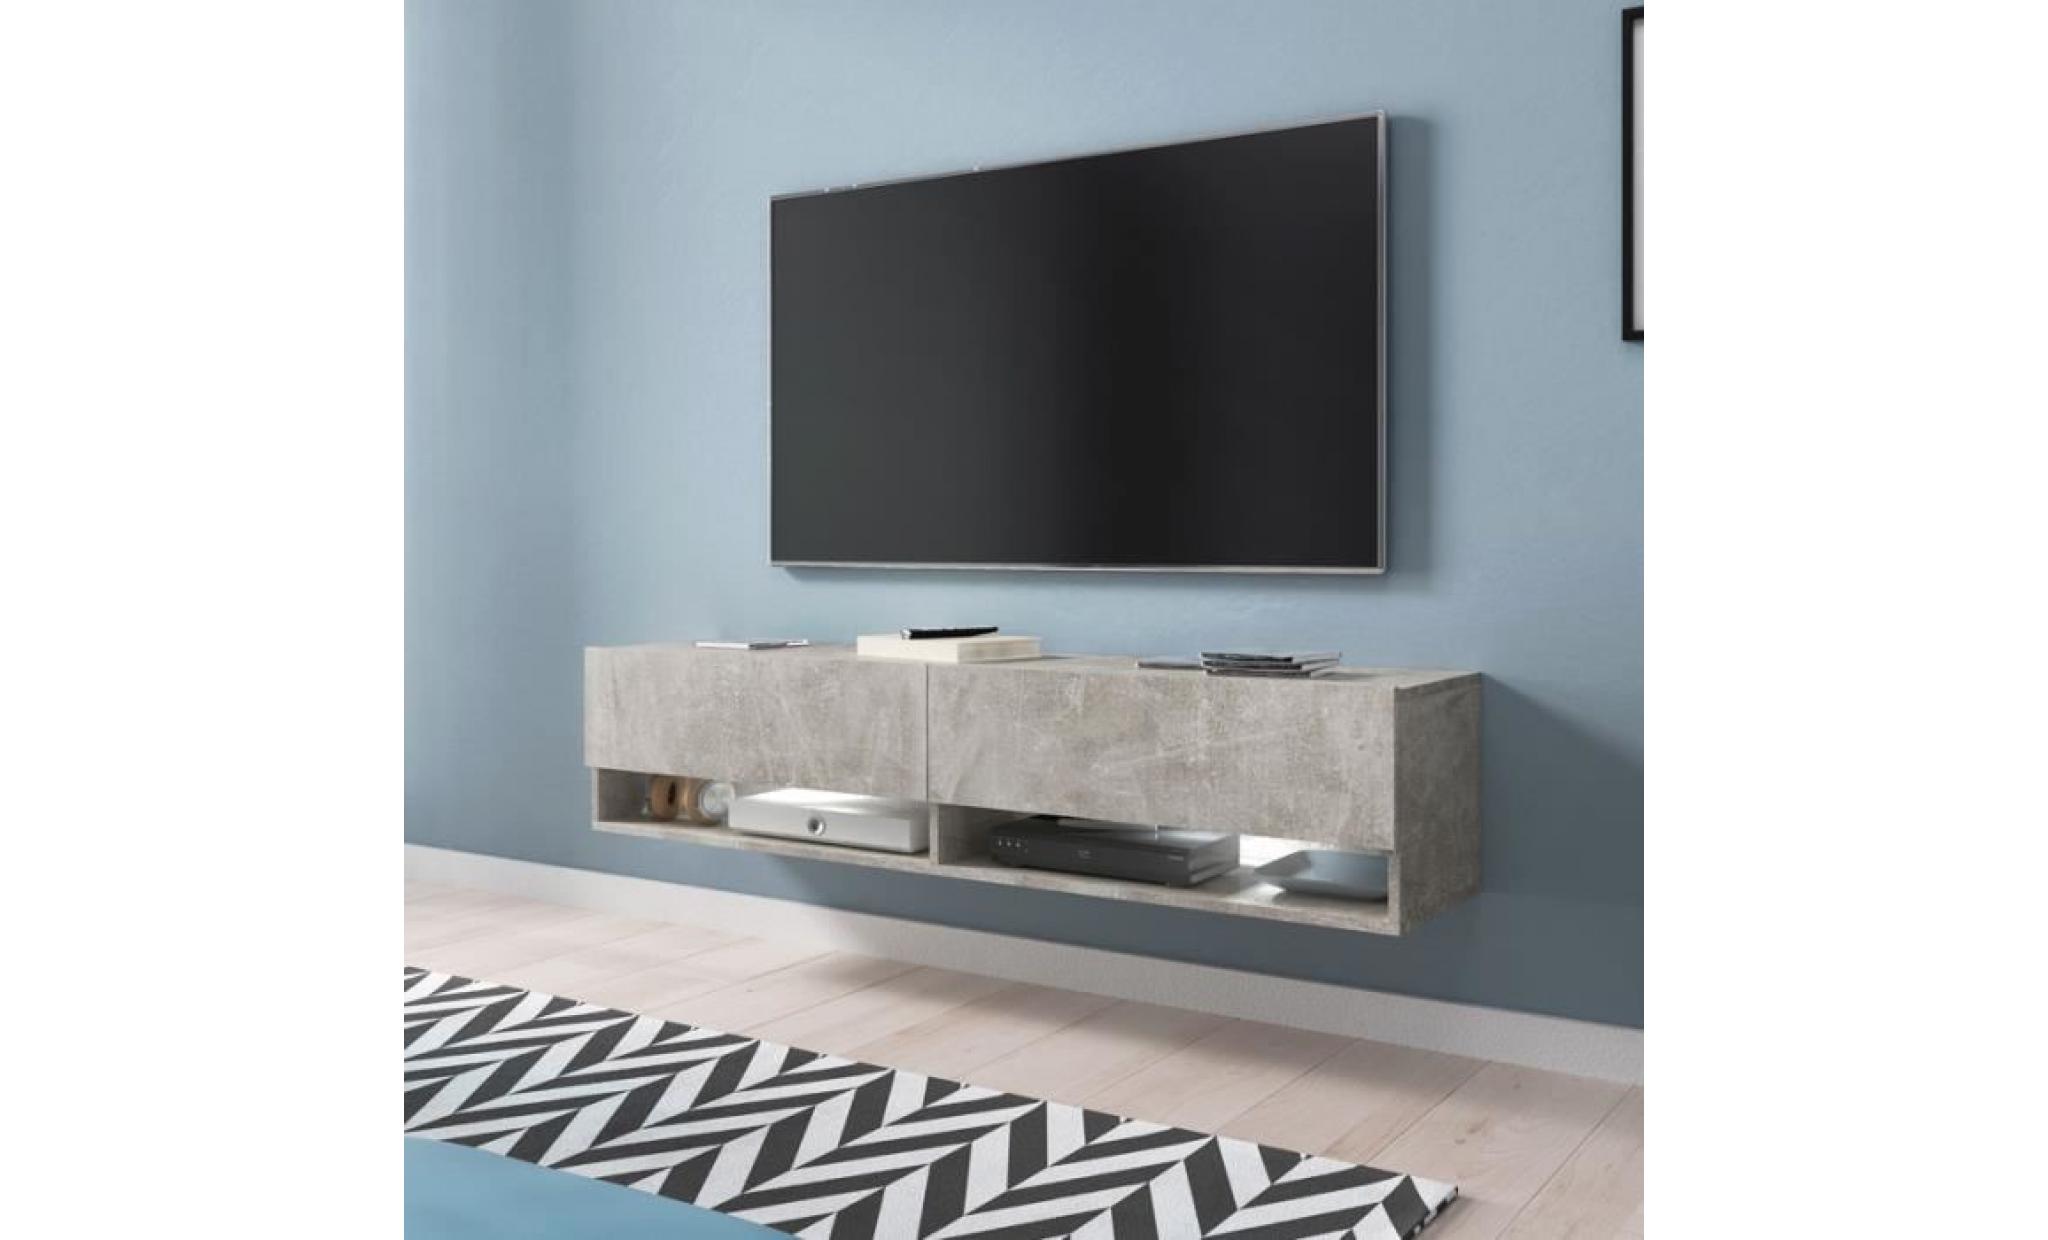 meuble tv / meuble de salon   wander   140 cm   béton   avec led   2 niches ouvertes   style industriel